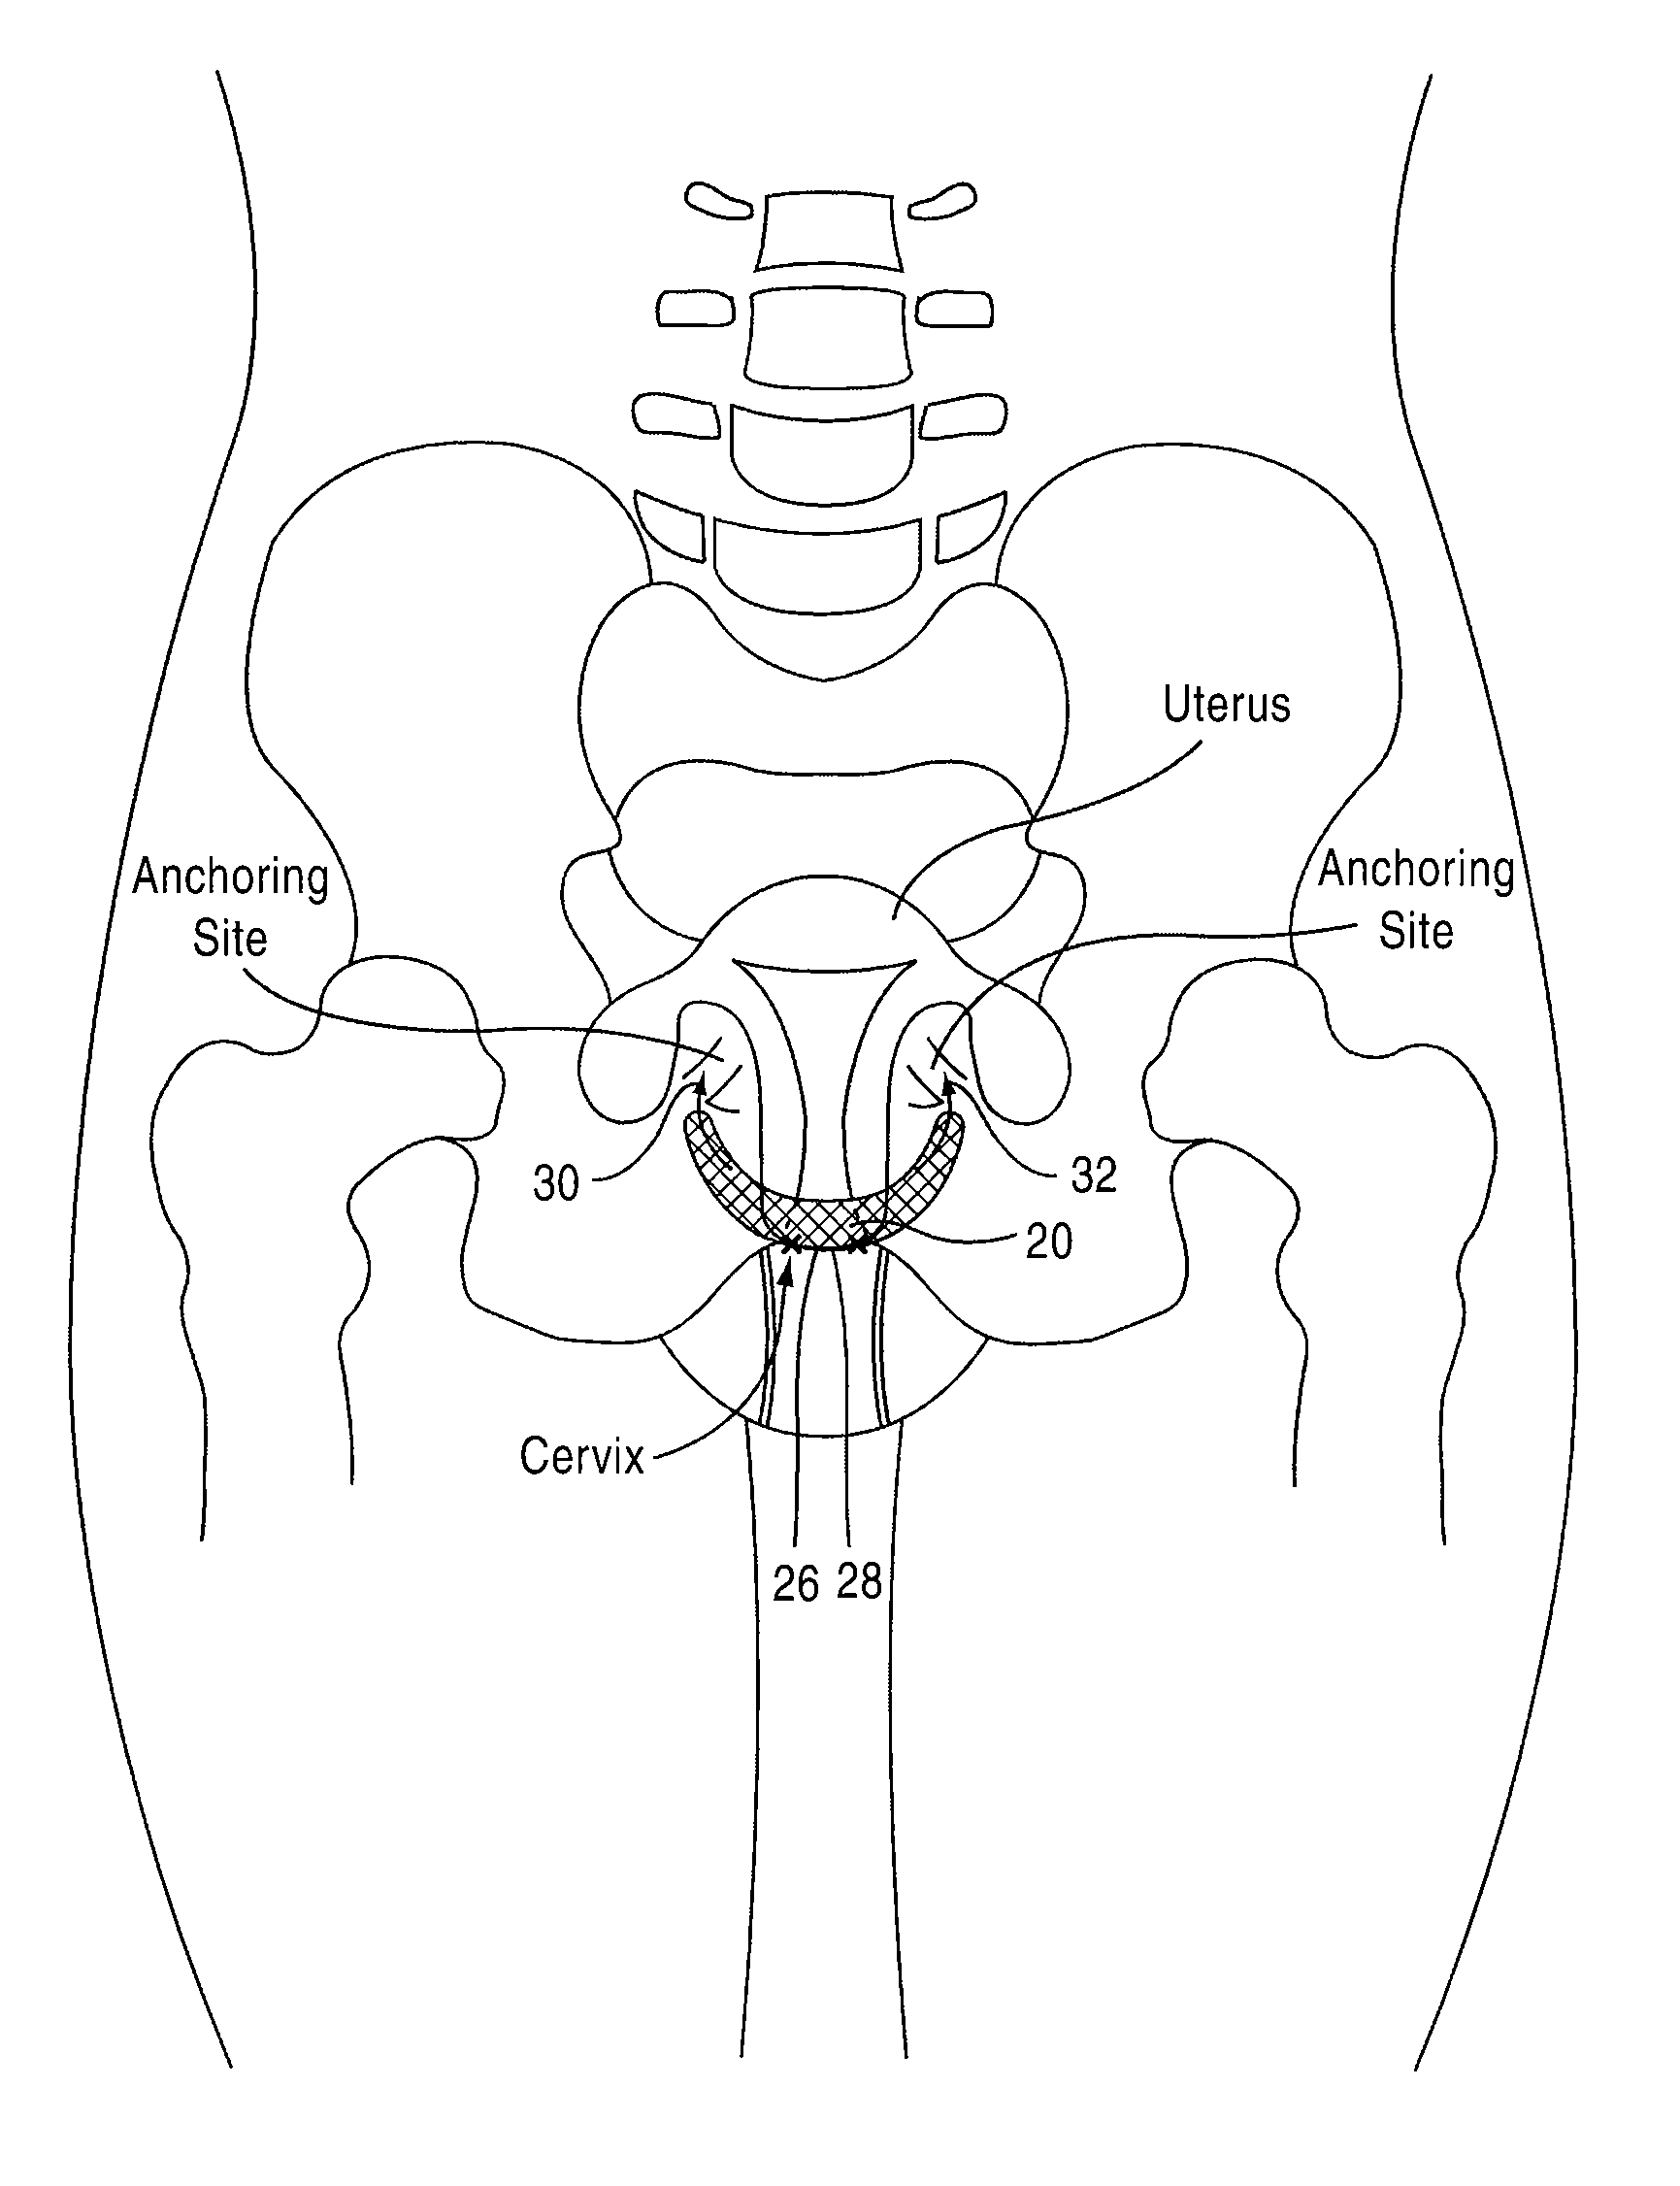 Apparatus and method for suspending a uterus